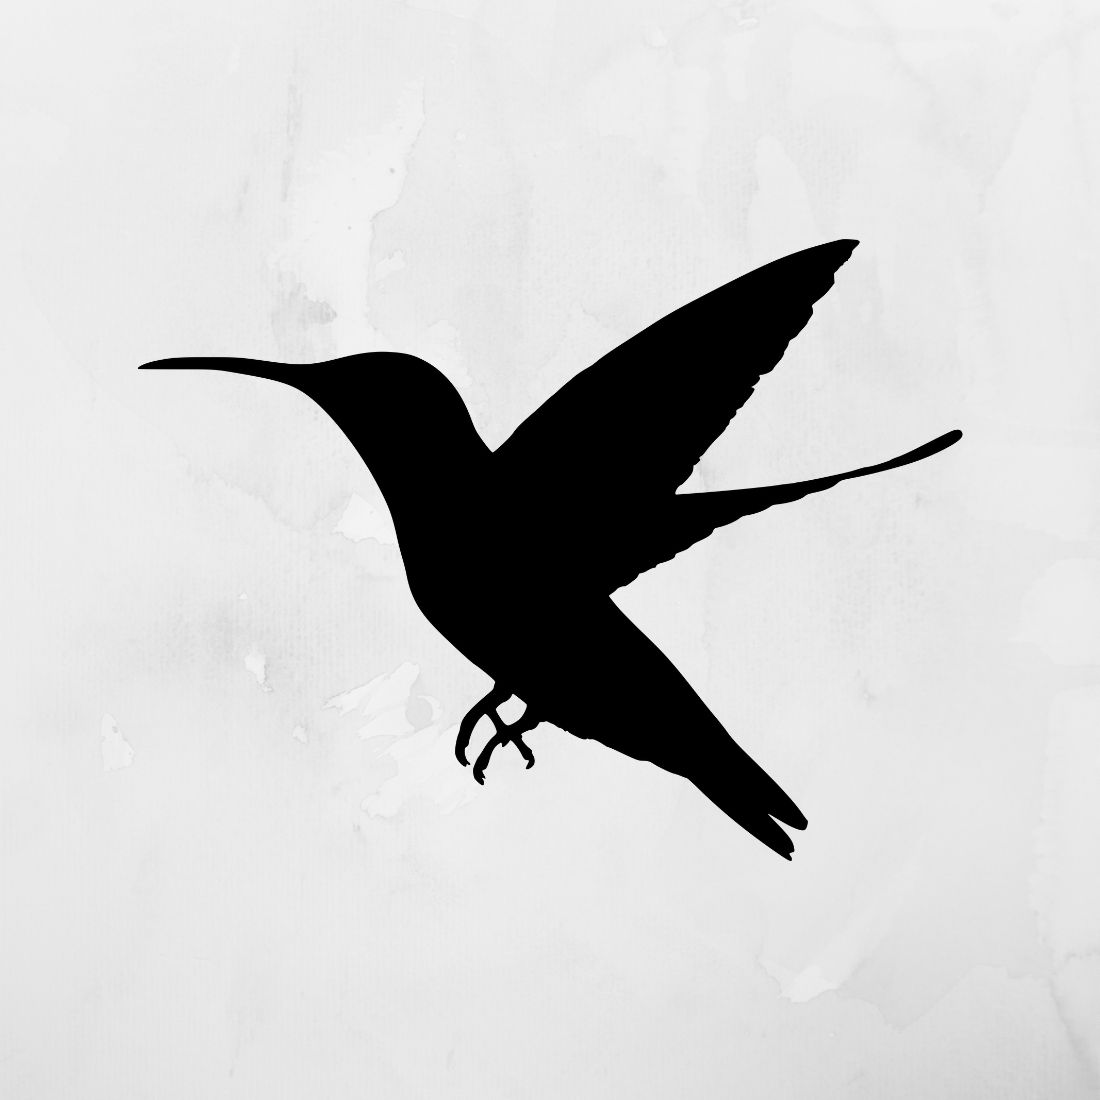 Bird SVG variant1.